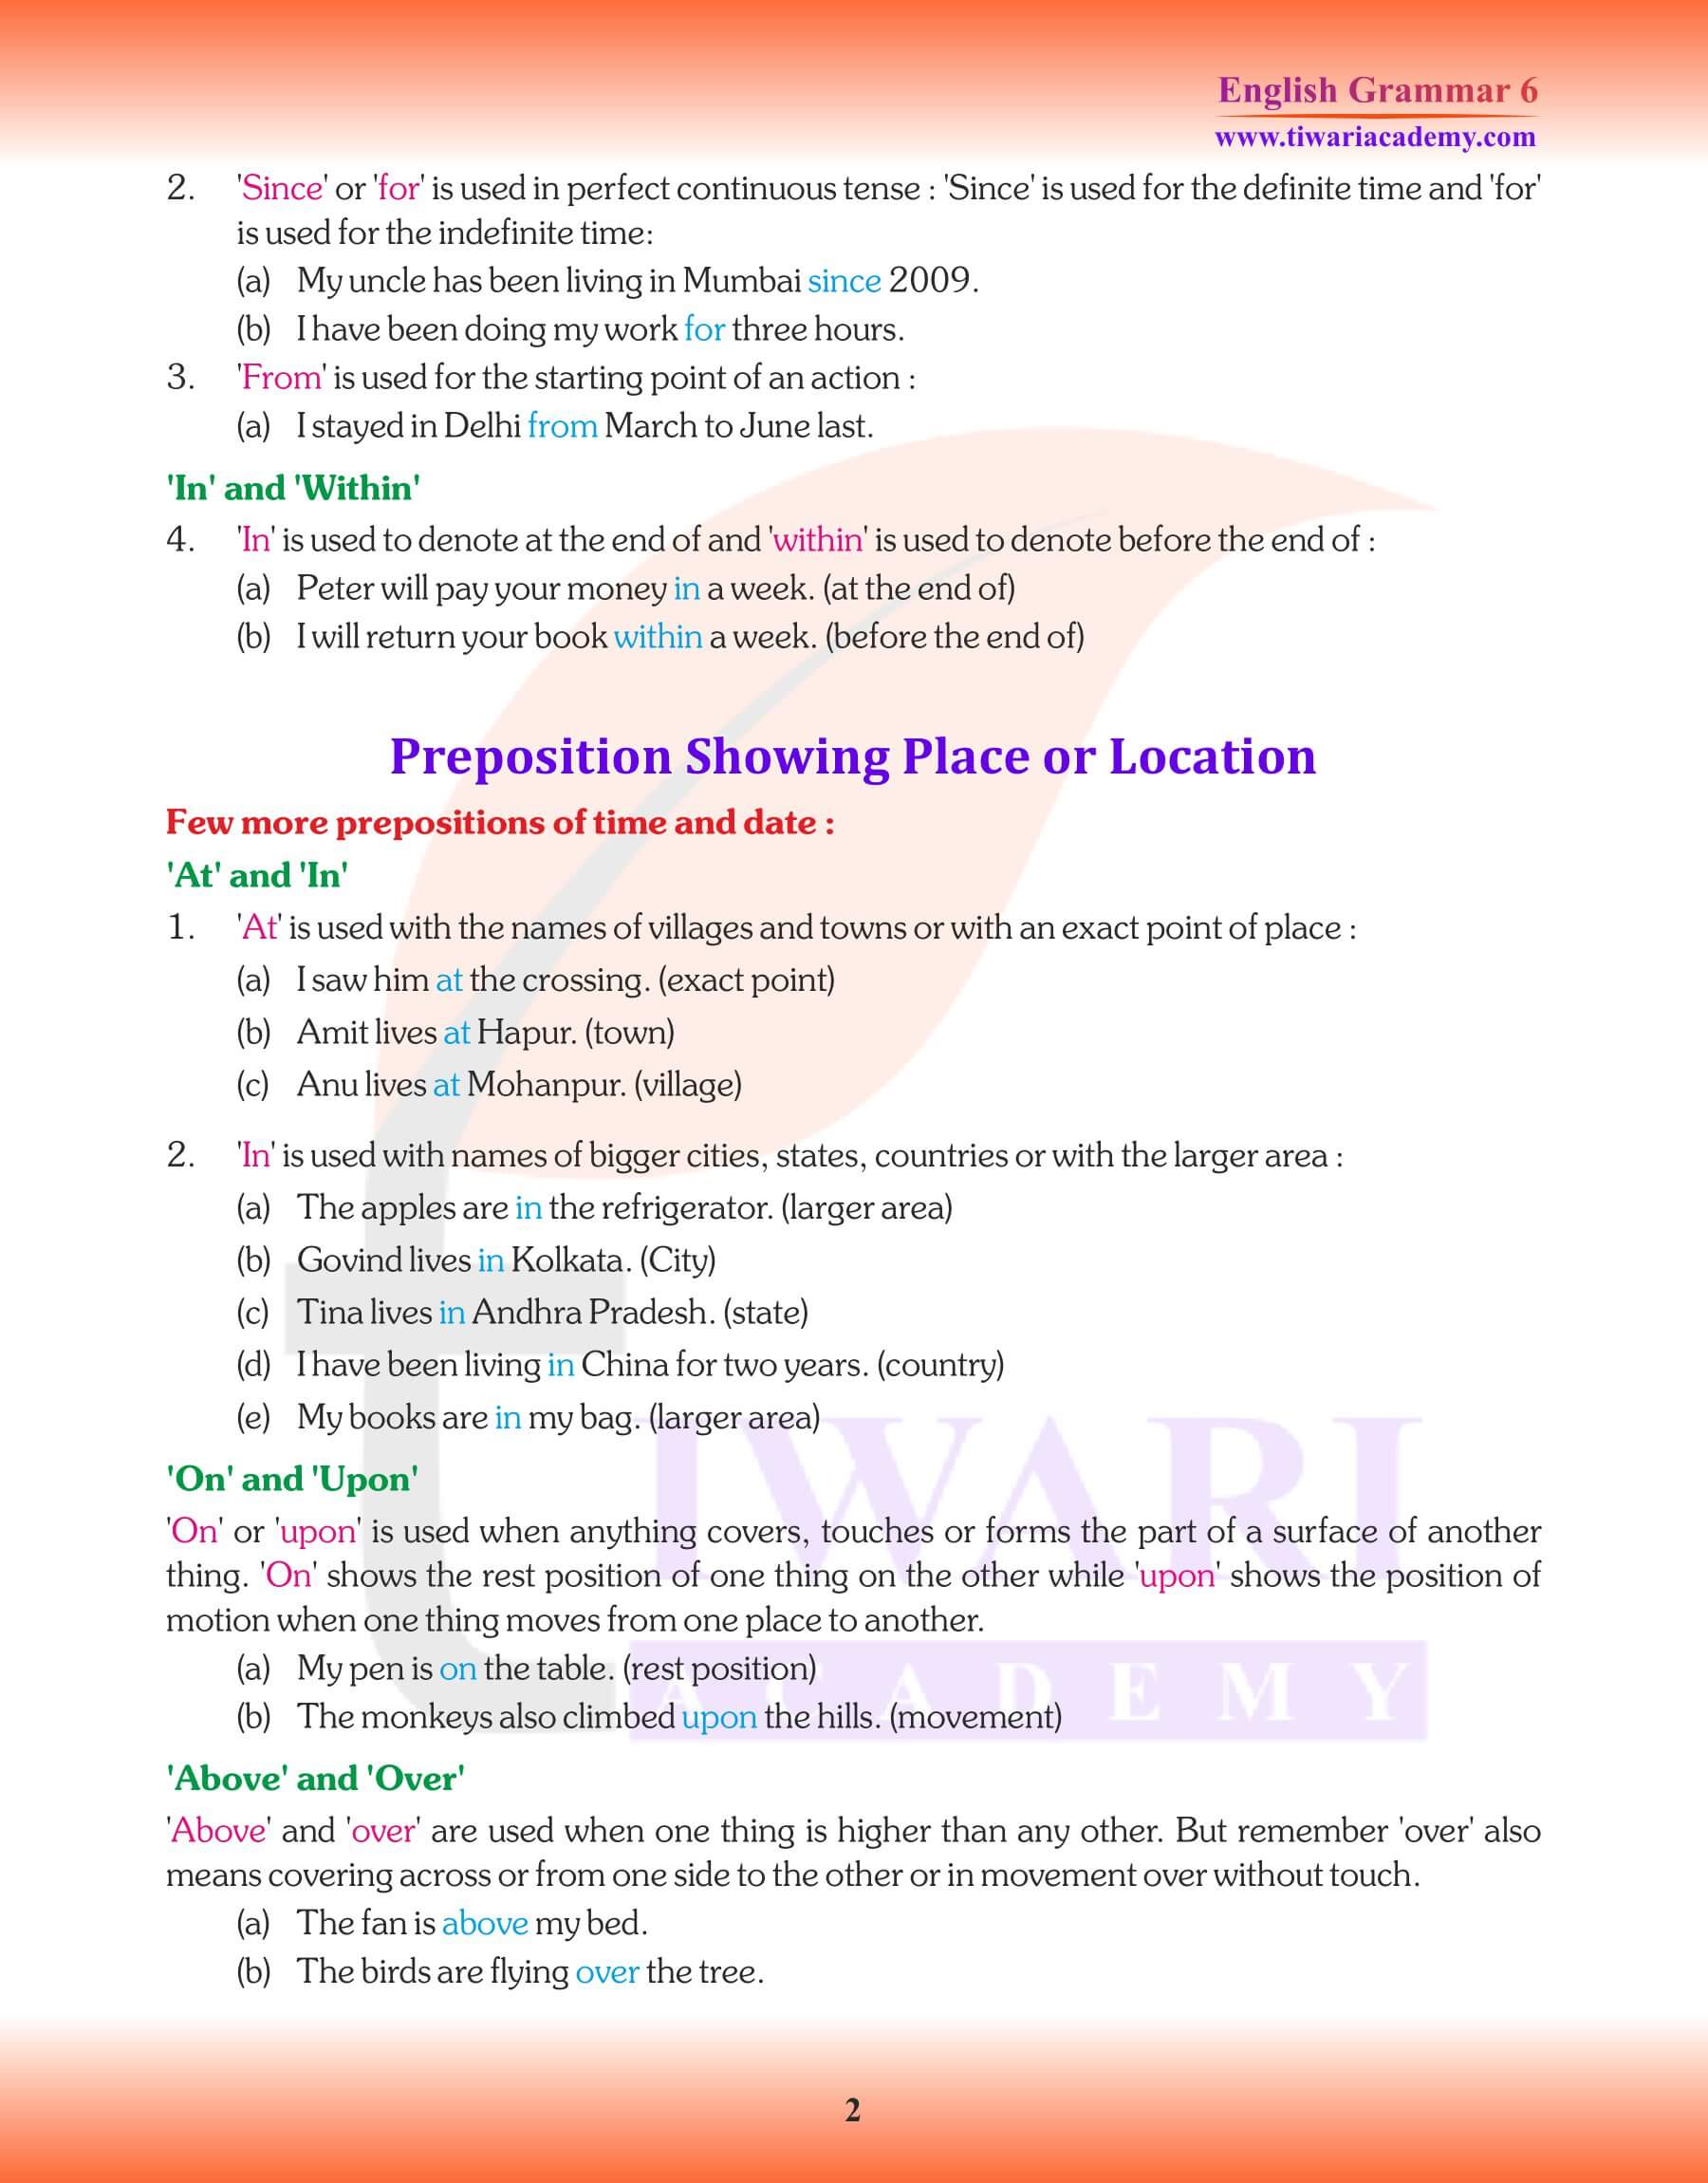 Class 6 Grammar the Preposition Study material